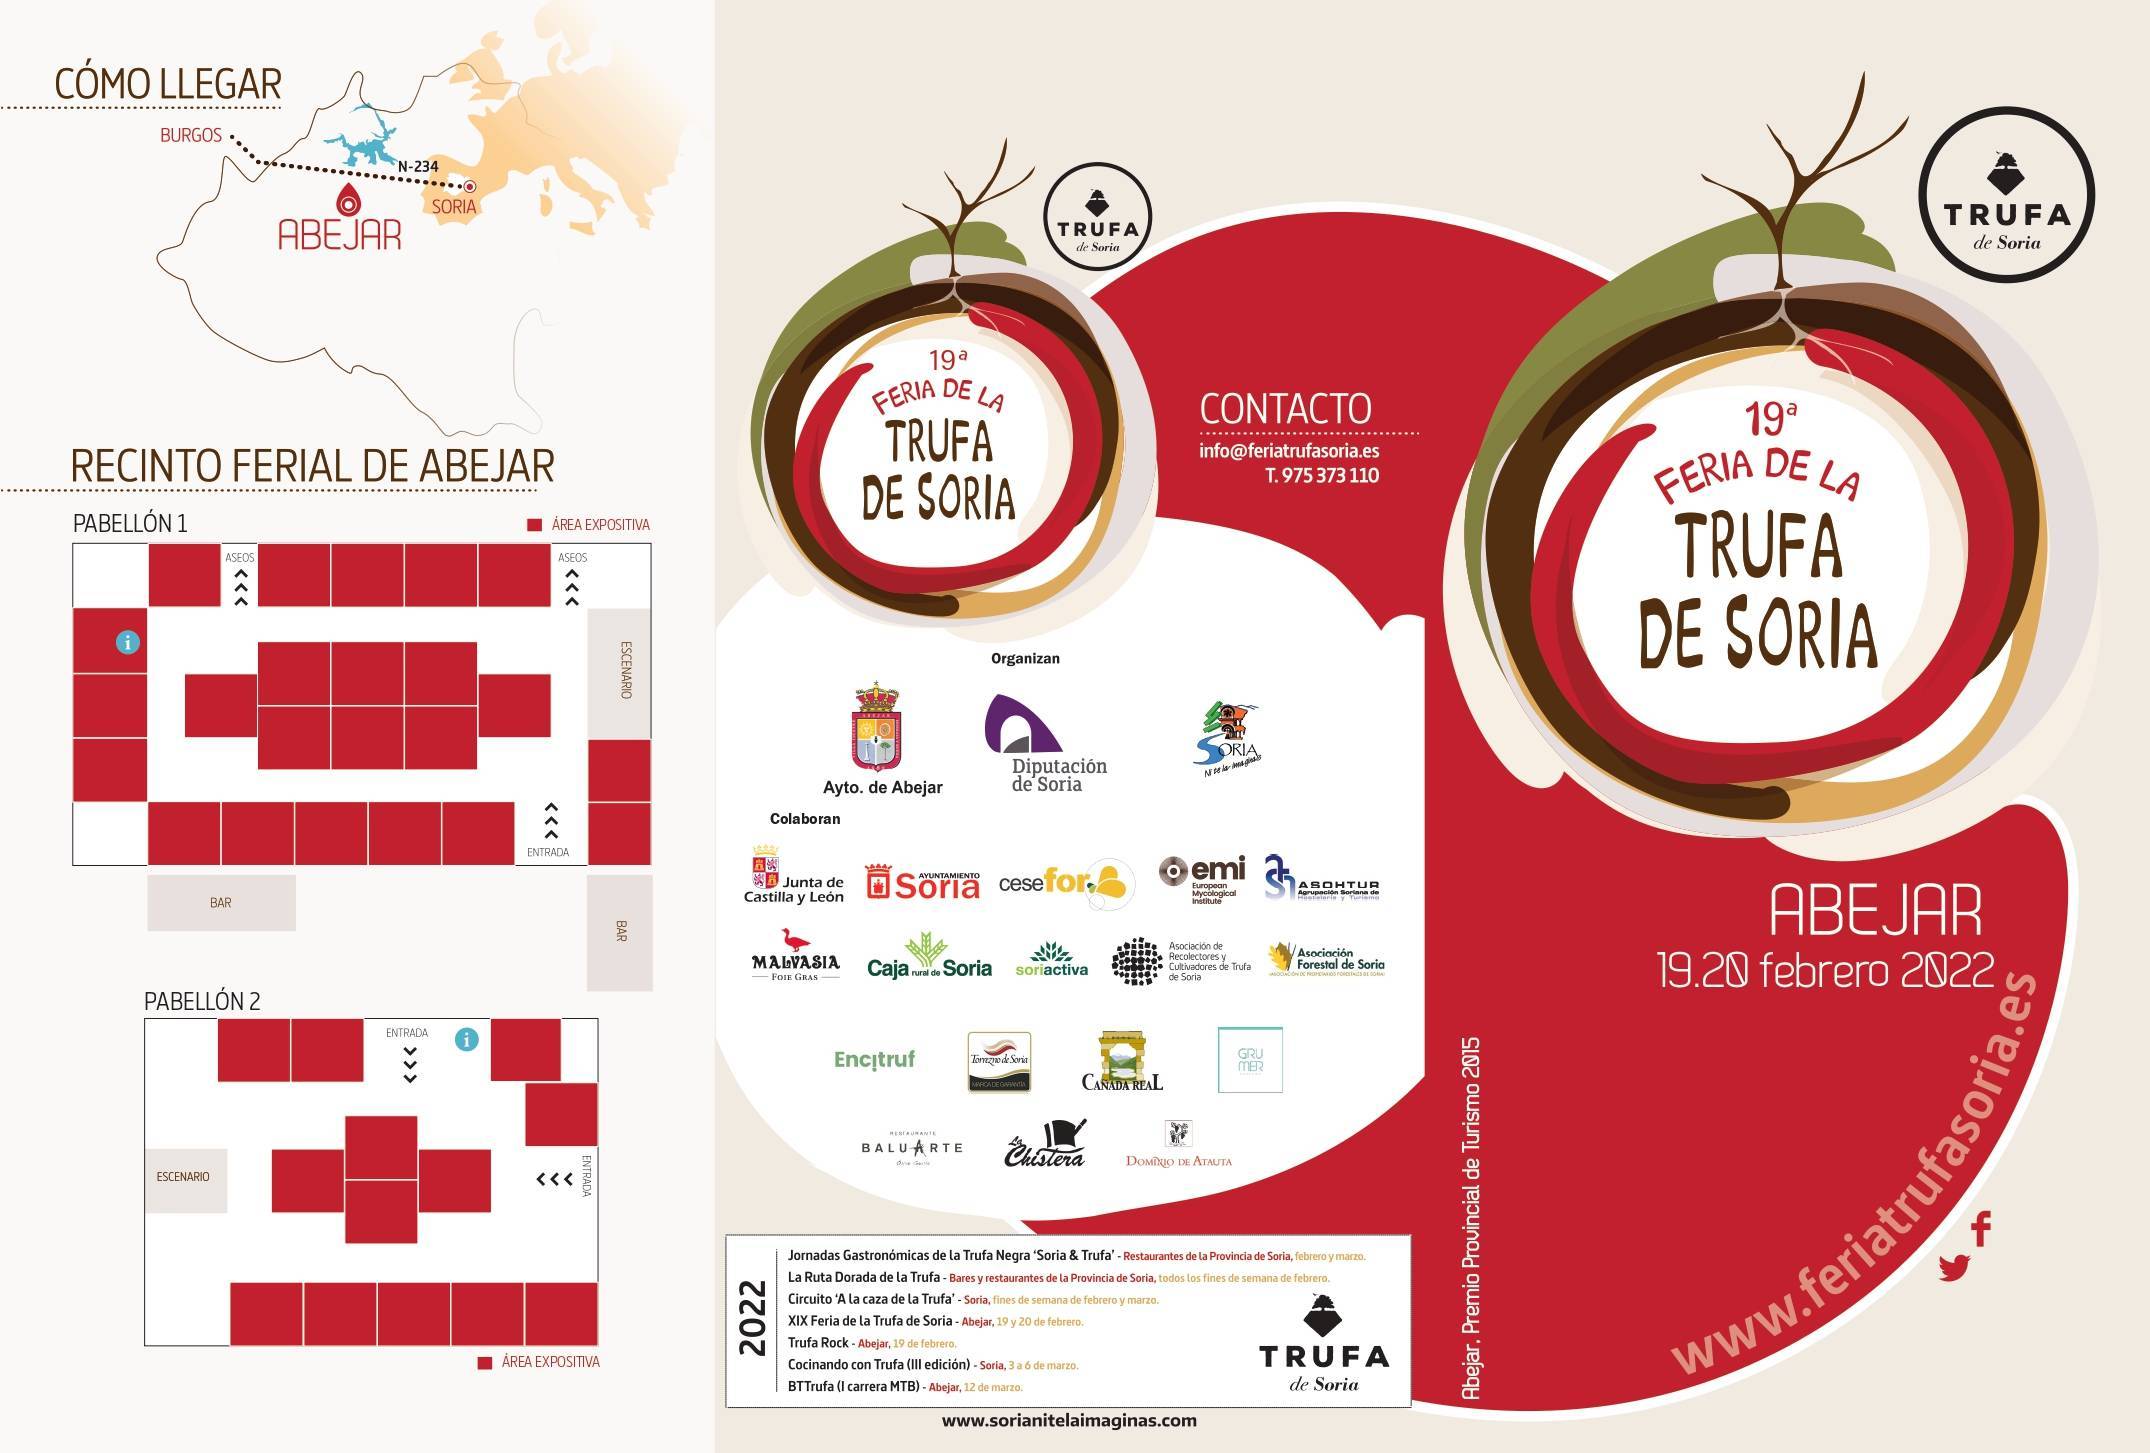 19ª Feria de la Trufa de Soria - Abejar (Soria) 2